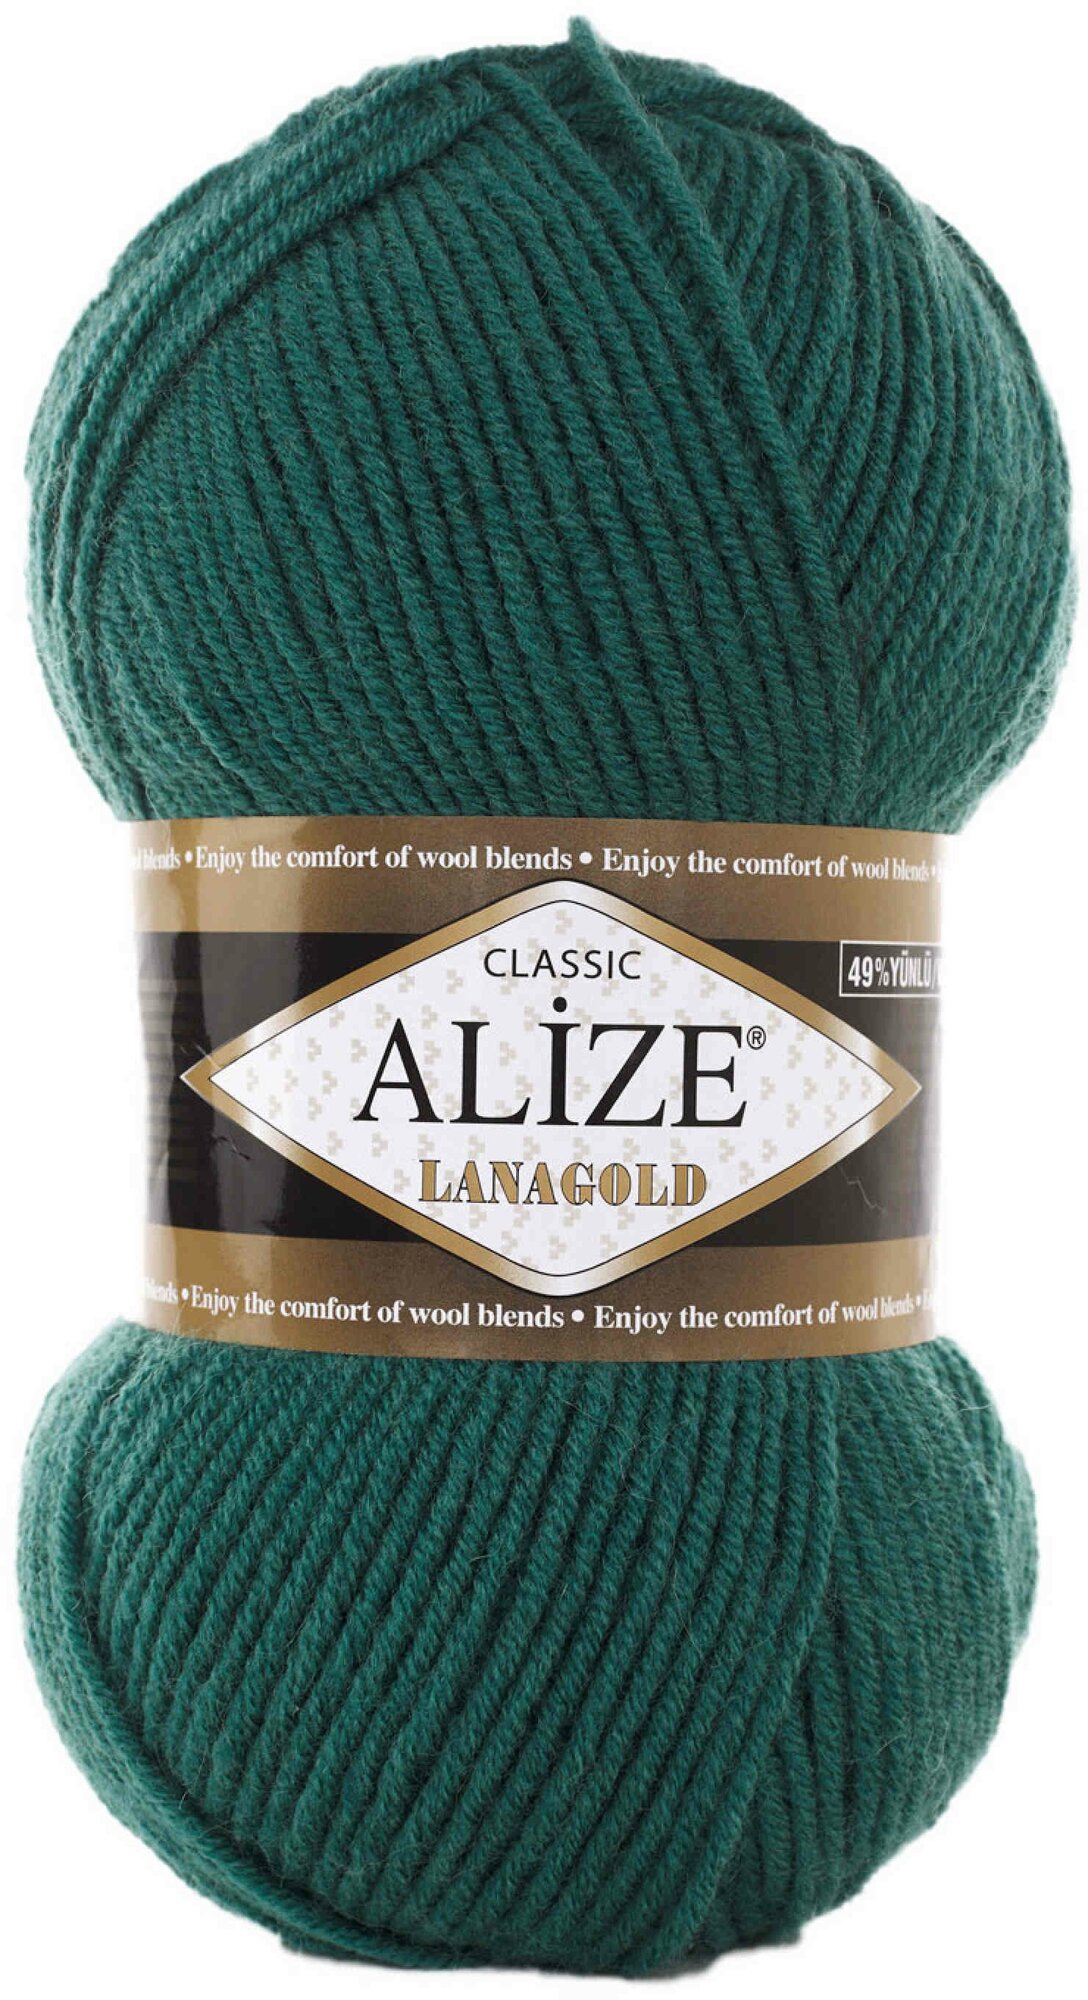 Пряжа Alize Lanagold античный зеленый (507), 51%акрил/49%шерсть, 240м, 100г, 3шт